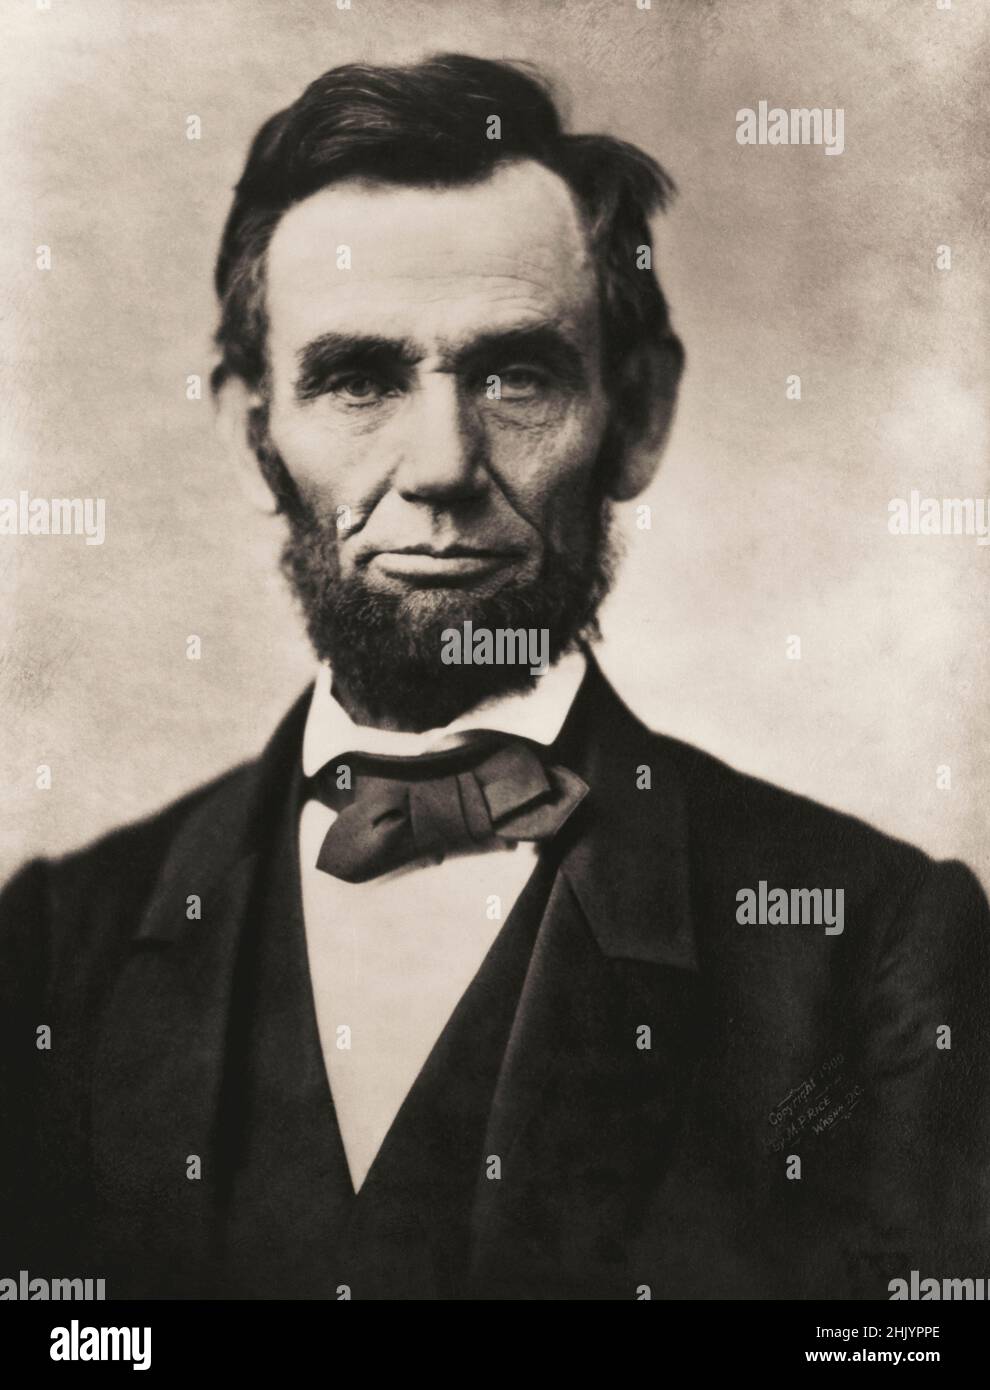 Abraham Lincoln, 1809 - 1865. 16th Präsident der Vereinigten Staaten. Nach einem Porträt von Alexander Gardner. Dieses berühmte Foto wird als Gettysburg-Porträt bezeichnet, weil es nur zwei Wochen vor der Gettysburg-Rede des Präsidenten aufgenommen wurde. Stockfoto